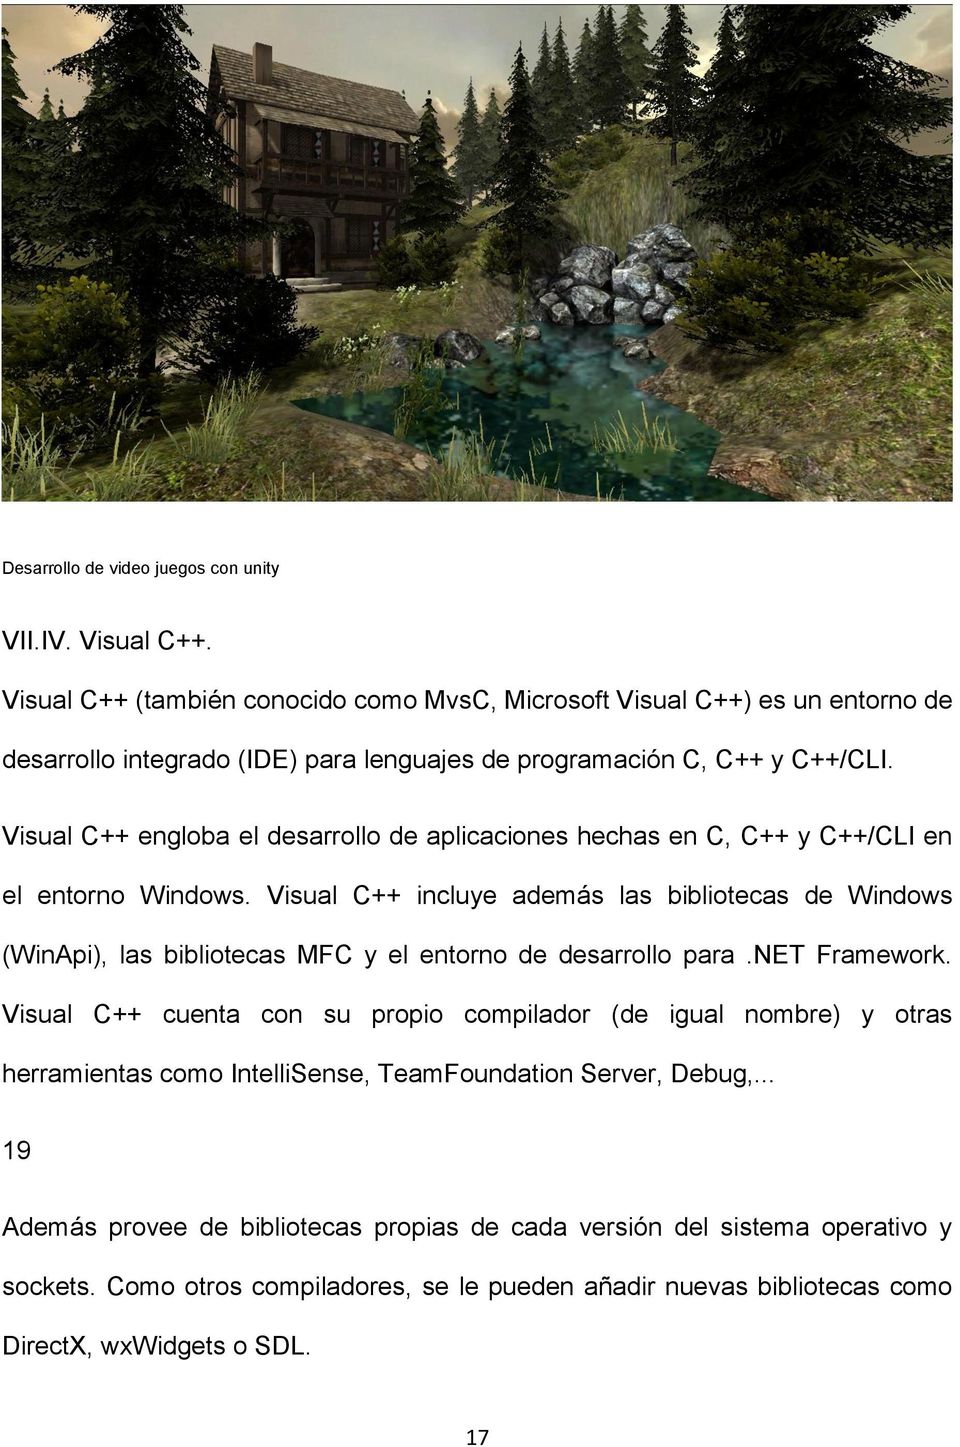 Visual C++ engloba el desarrollo de aplicaciones hechas en C, C++ y C++/CLI en el entorno Windows.